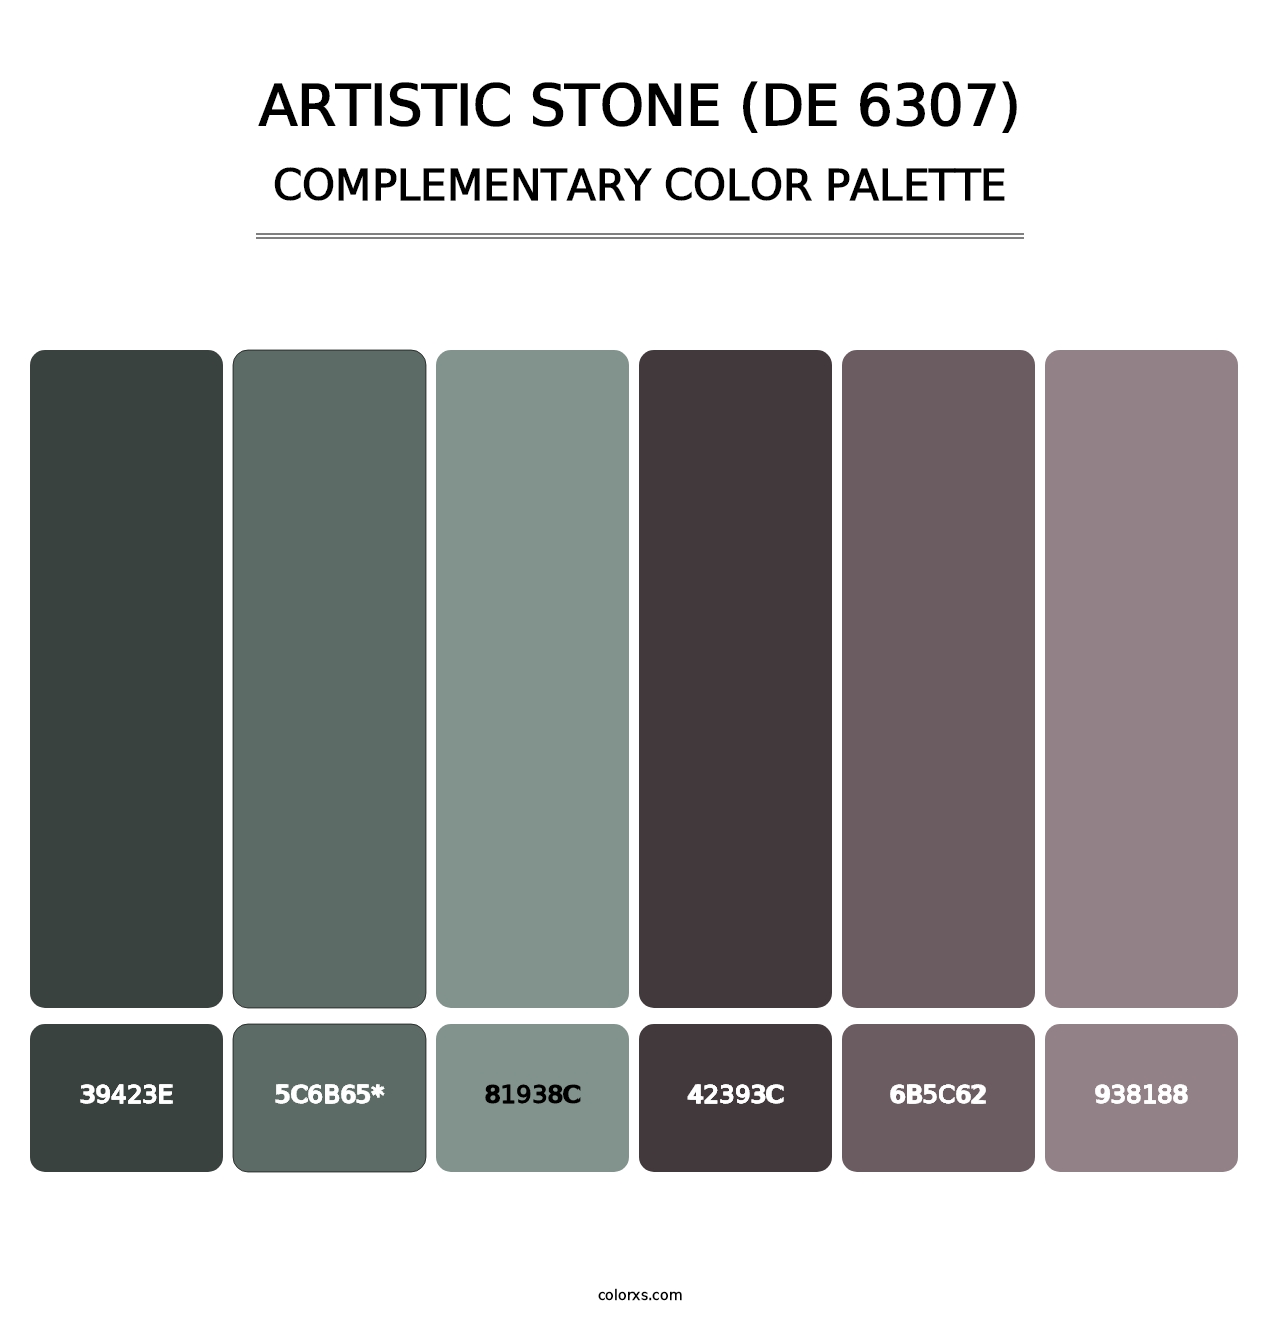 Artistic Stone (DE 6307) - Complementary Color Palette